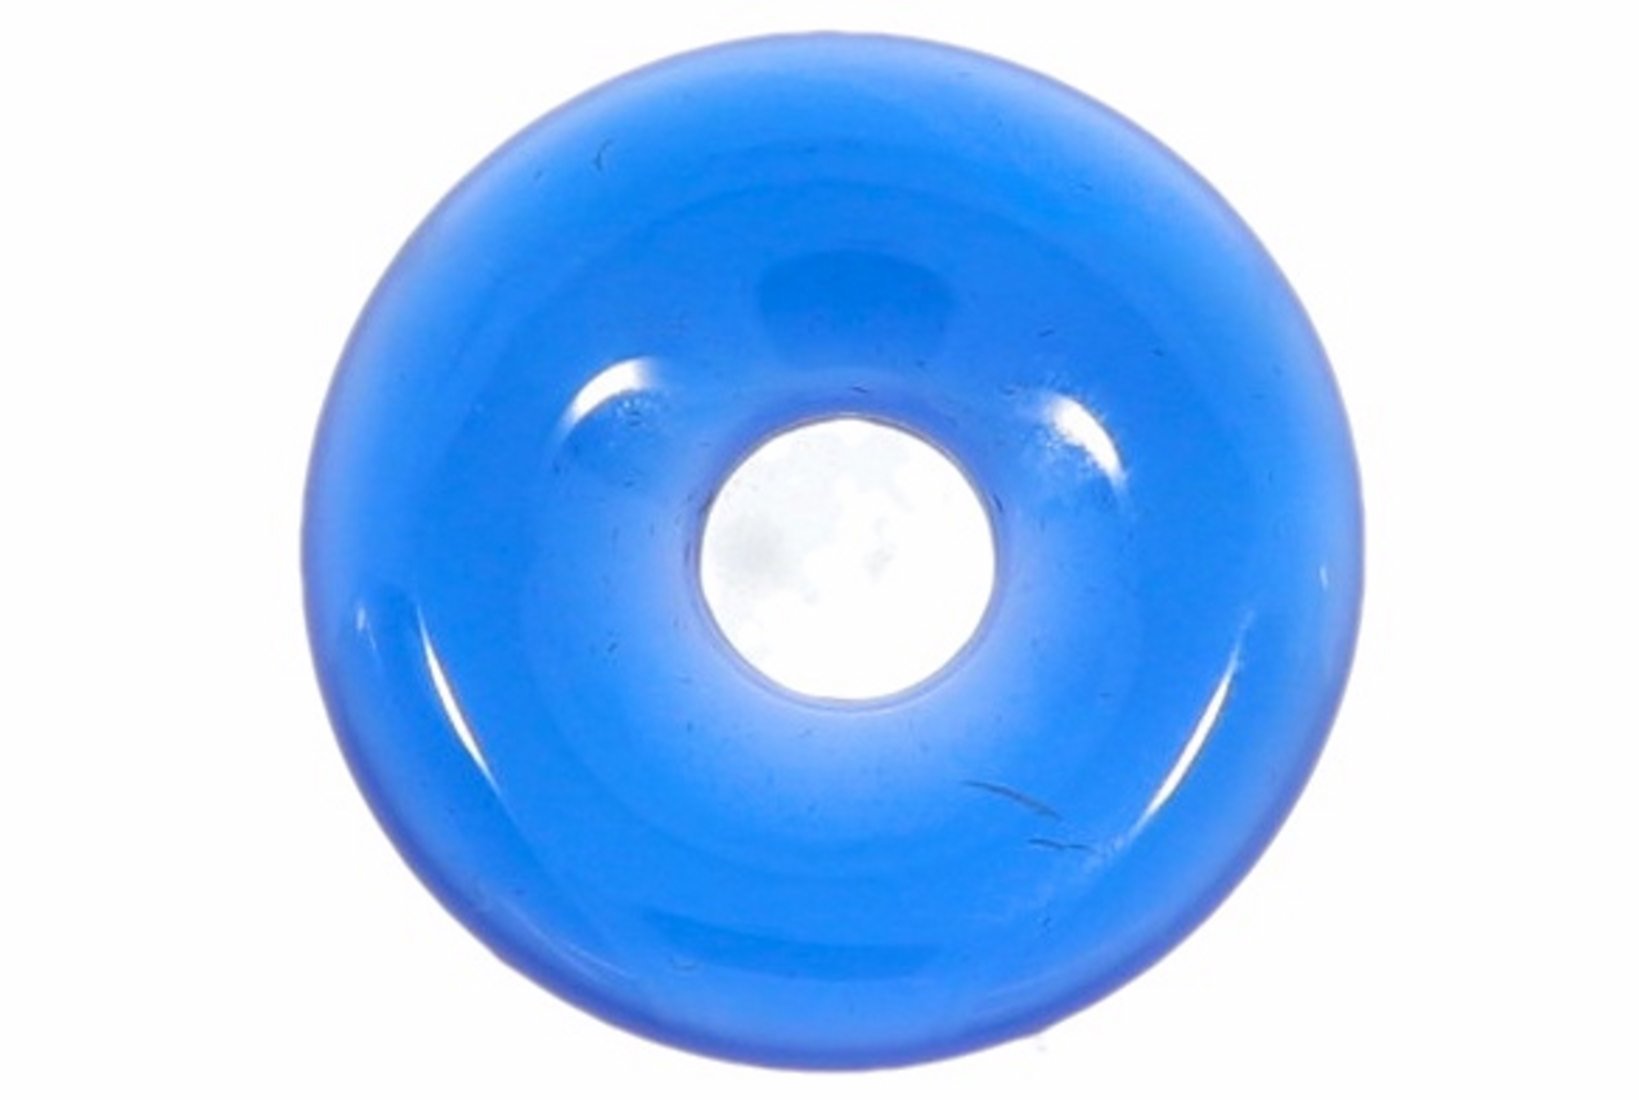 Achat blau Donut Schmuck Anhänger 25mm für's Lederband HS122